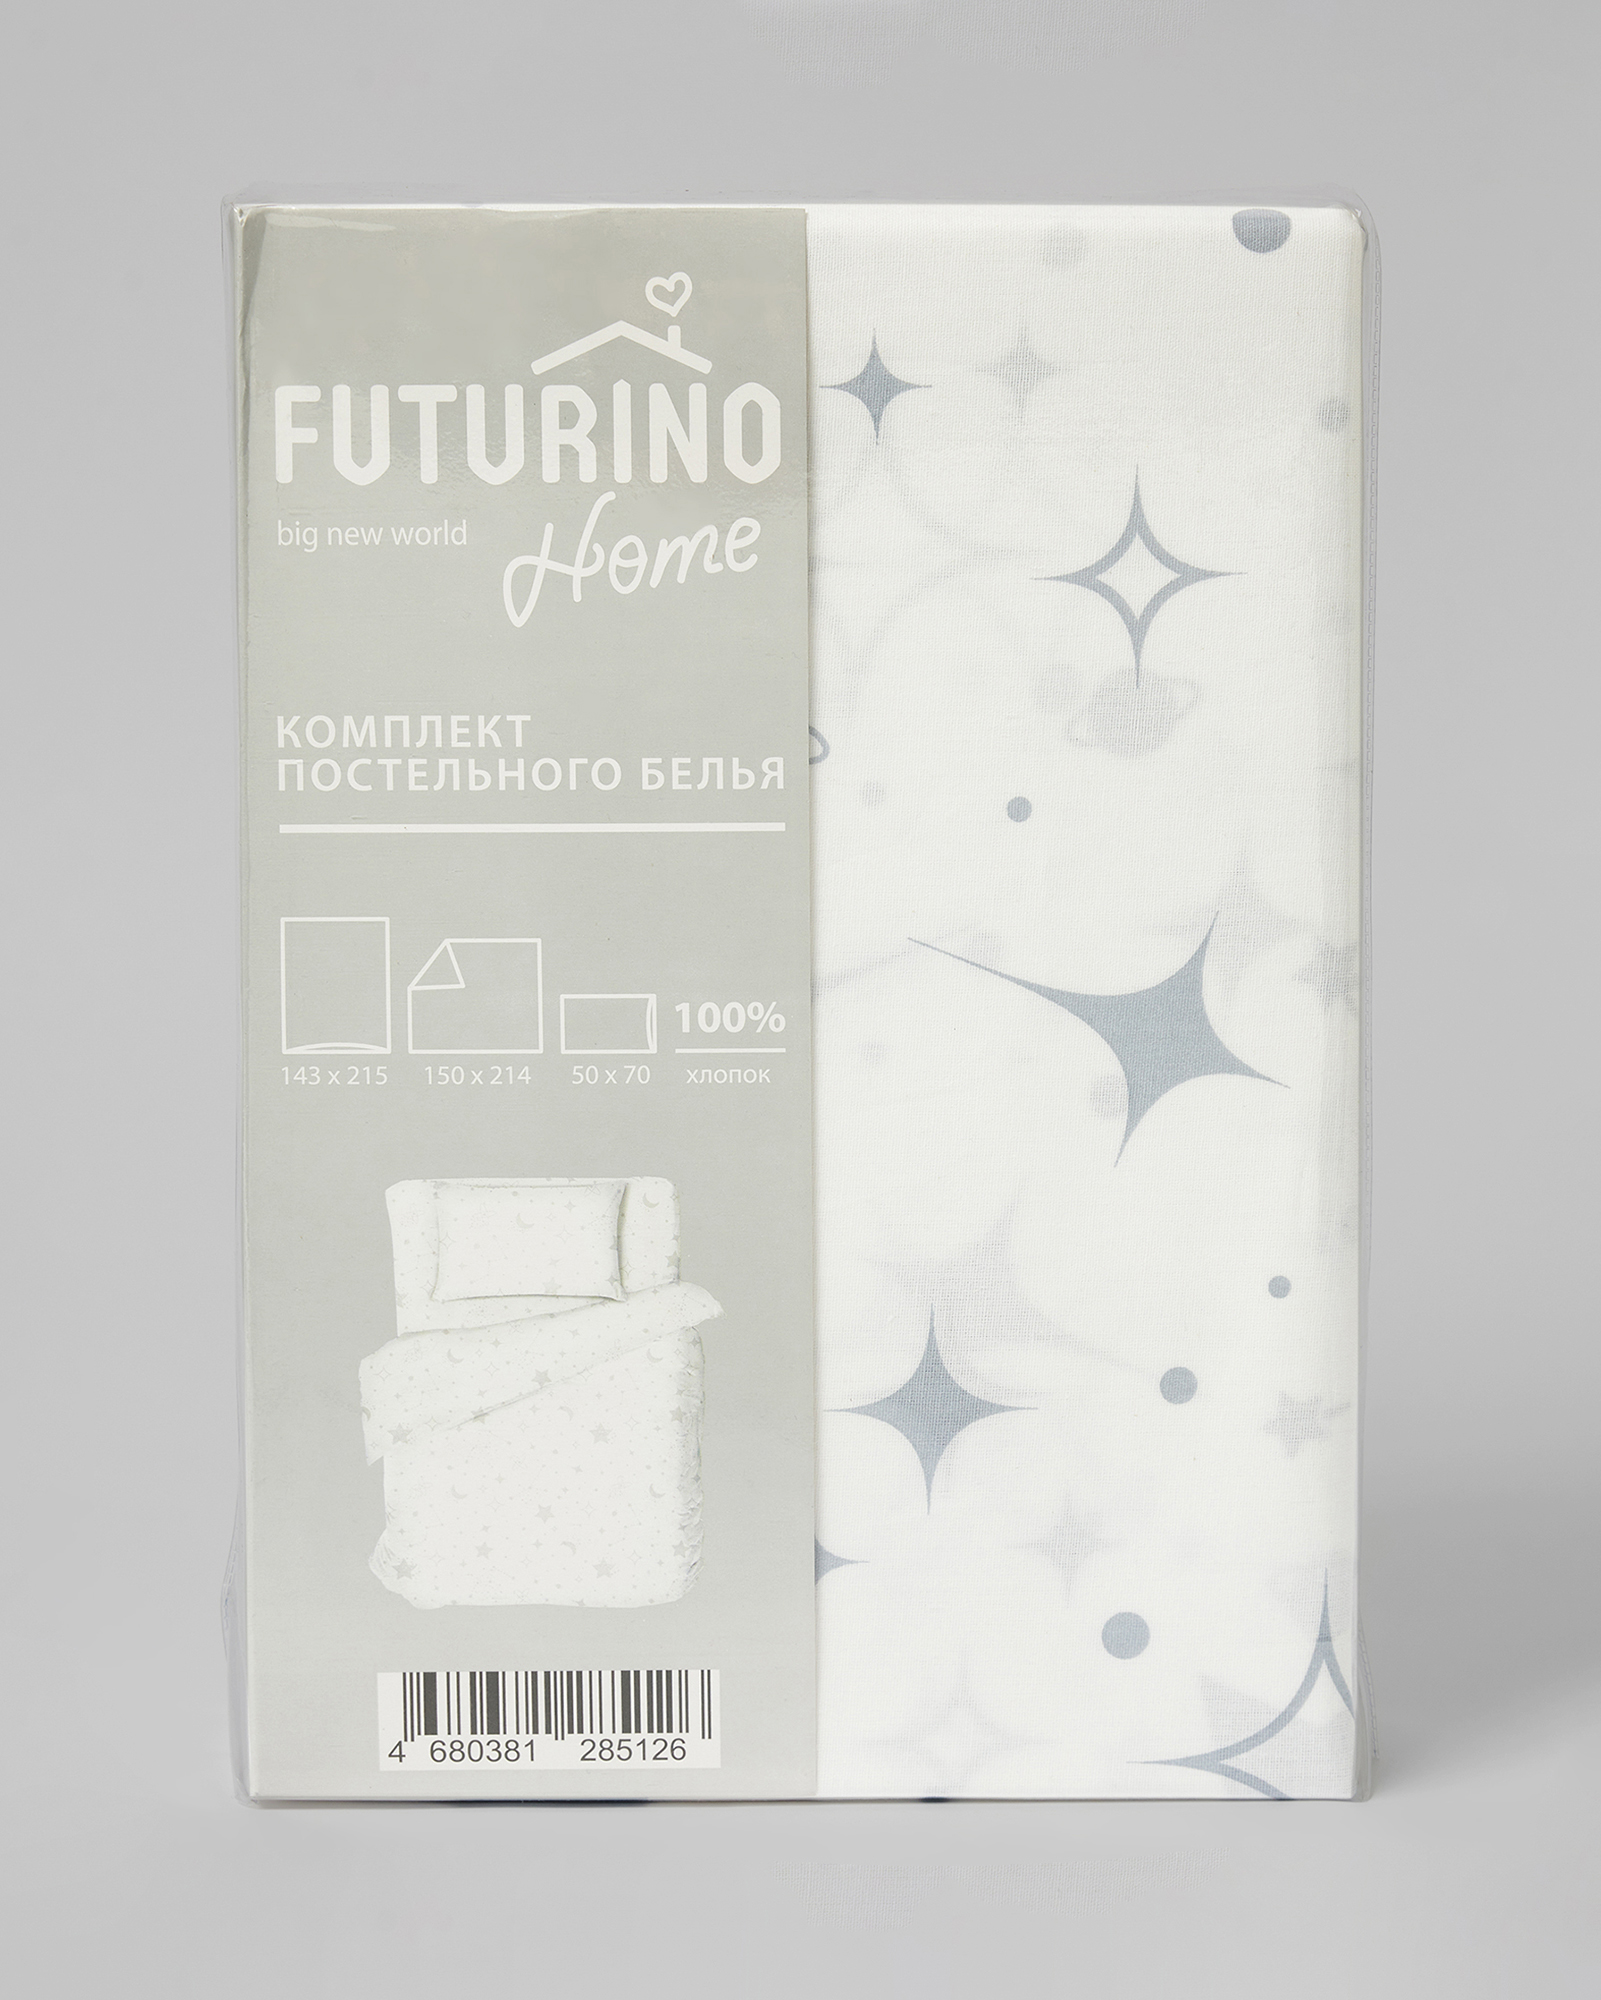 Комплект постельного белья Futurino Home Звёздное небо 3 предмета  - фото 6